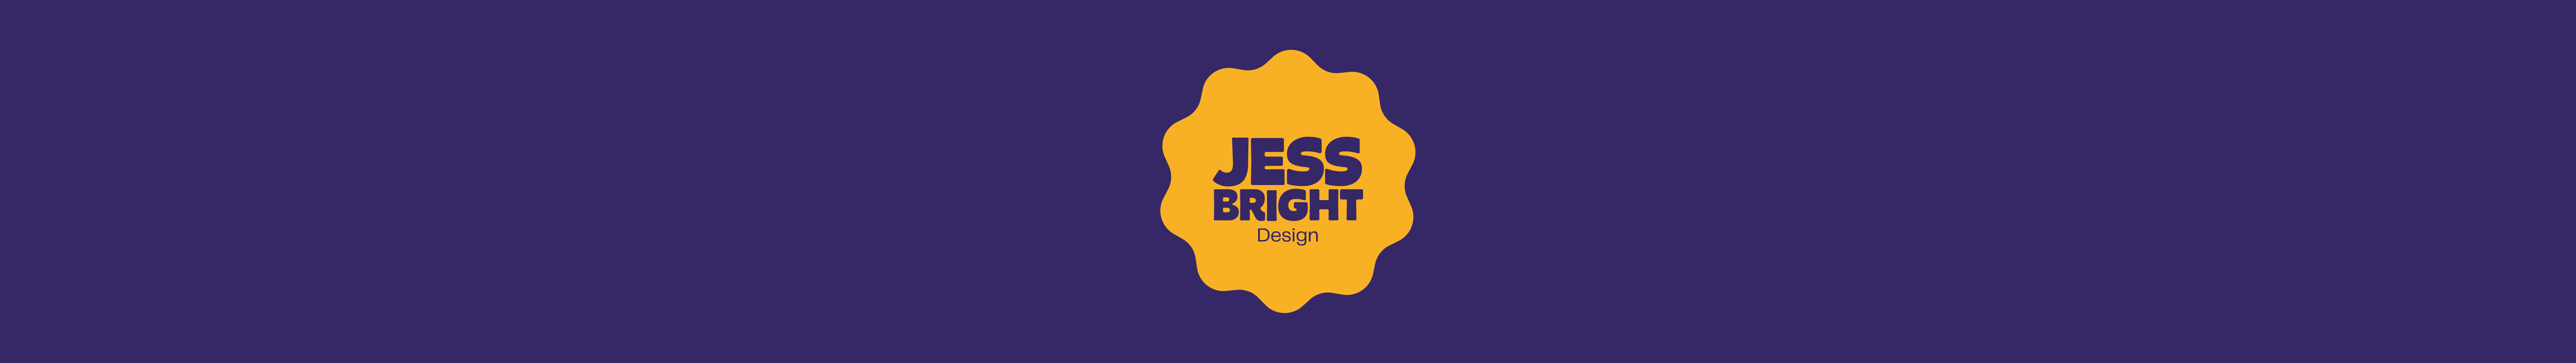 Jess Bright's profile banner